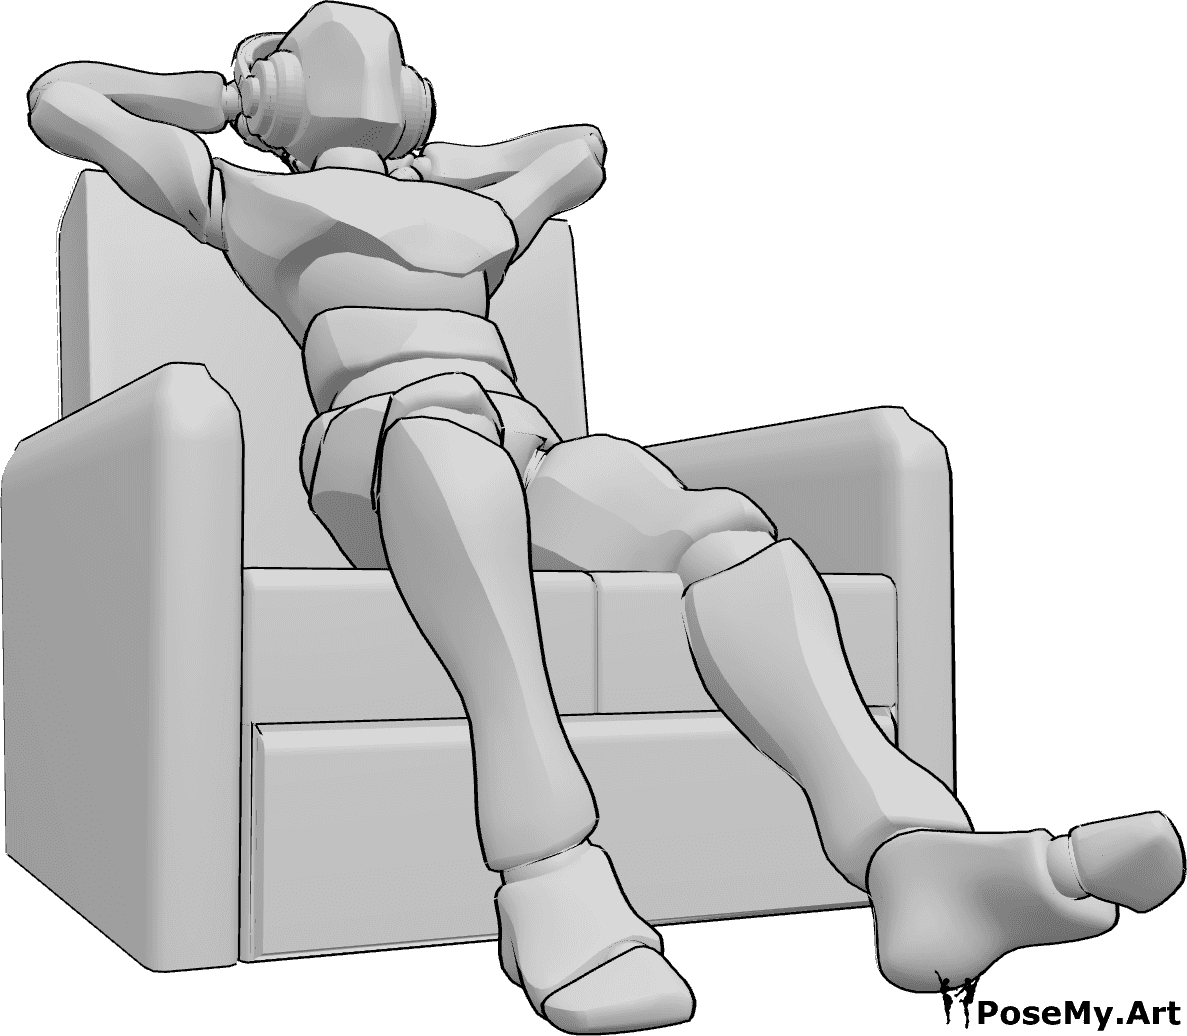 Riferimento alle pose- Posa seduta per ascoltare la musica - L'uomo è comodamente seduto sul divano e ascolta la musica in cuffia.